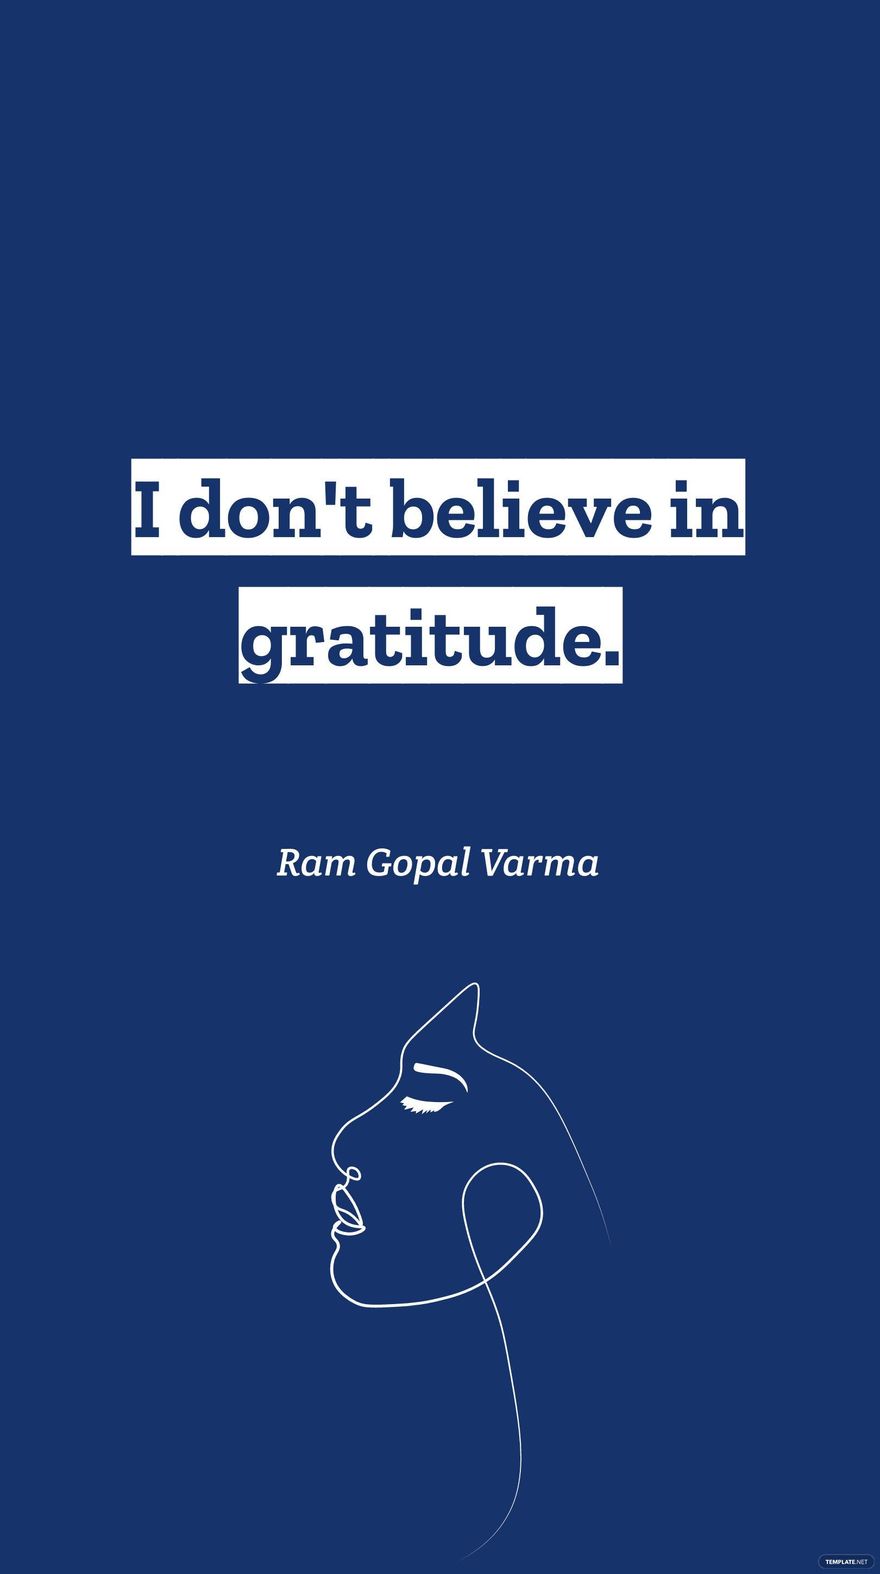 Ram Gopal Varma - I don't believe in gratitude. in JPG